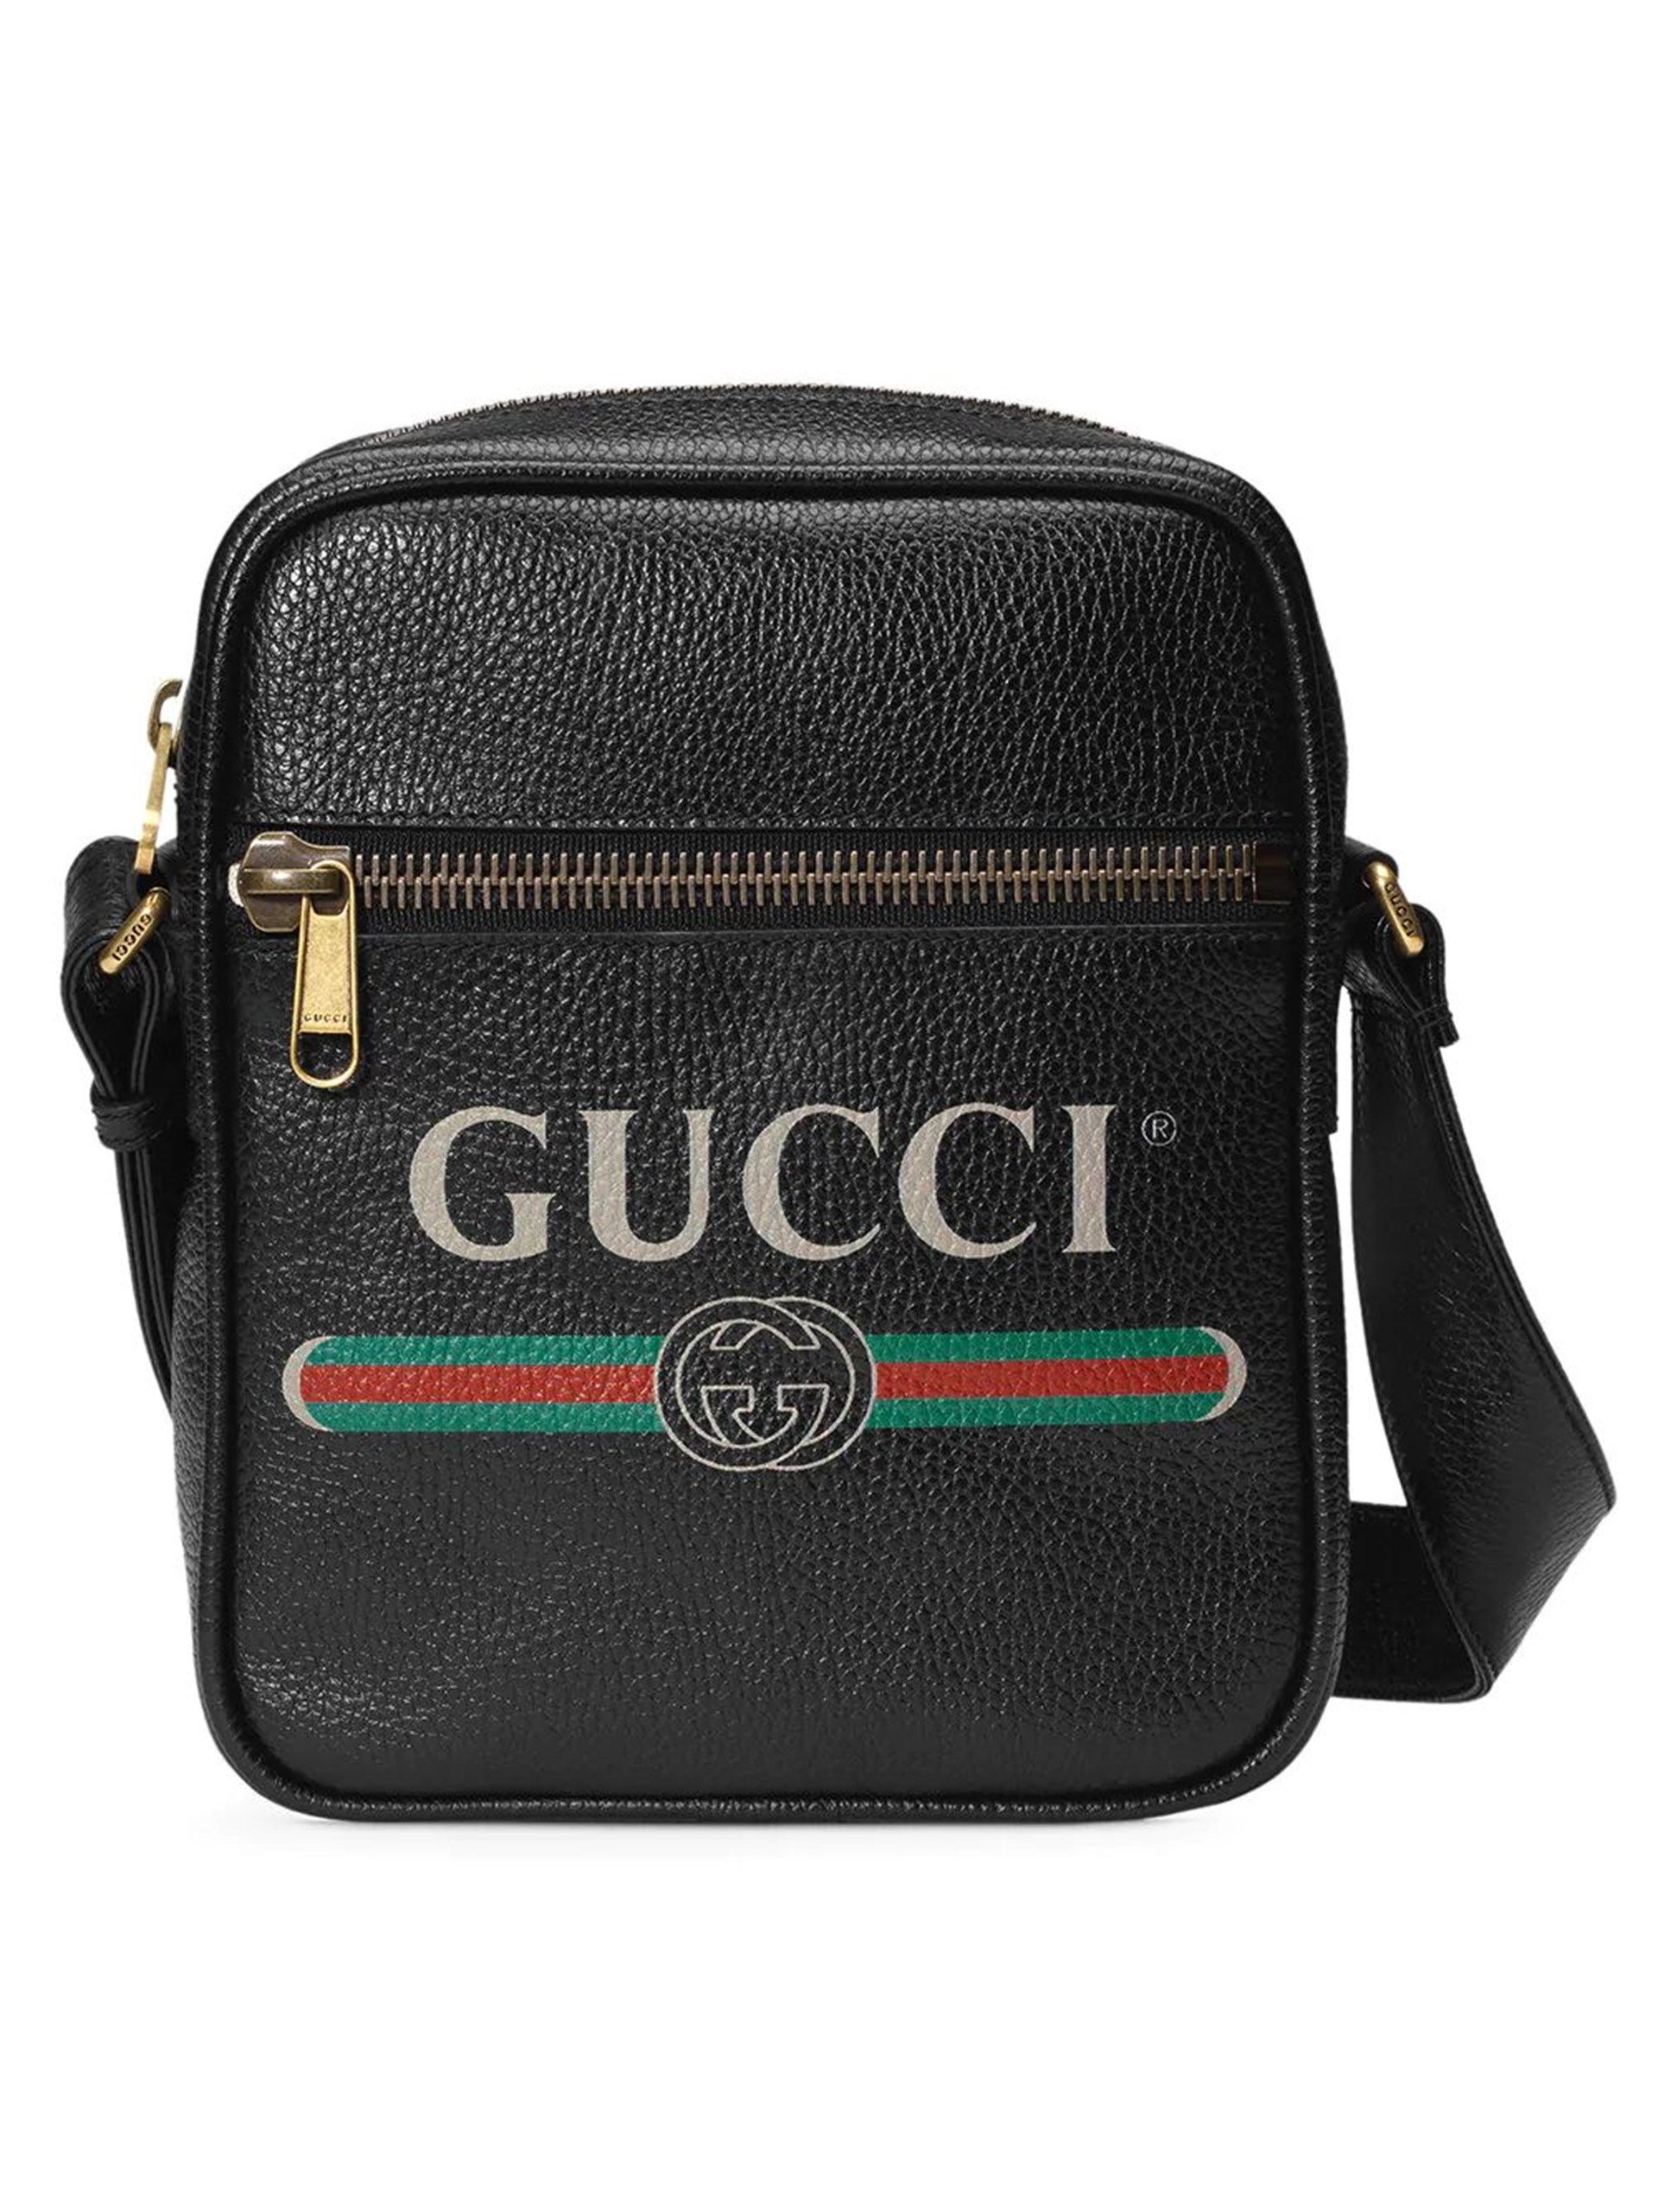 Gucci Men's Leather Messenger Bag | Upp till 70% | Afound.com